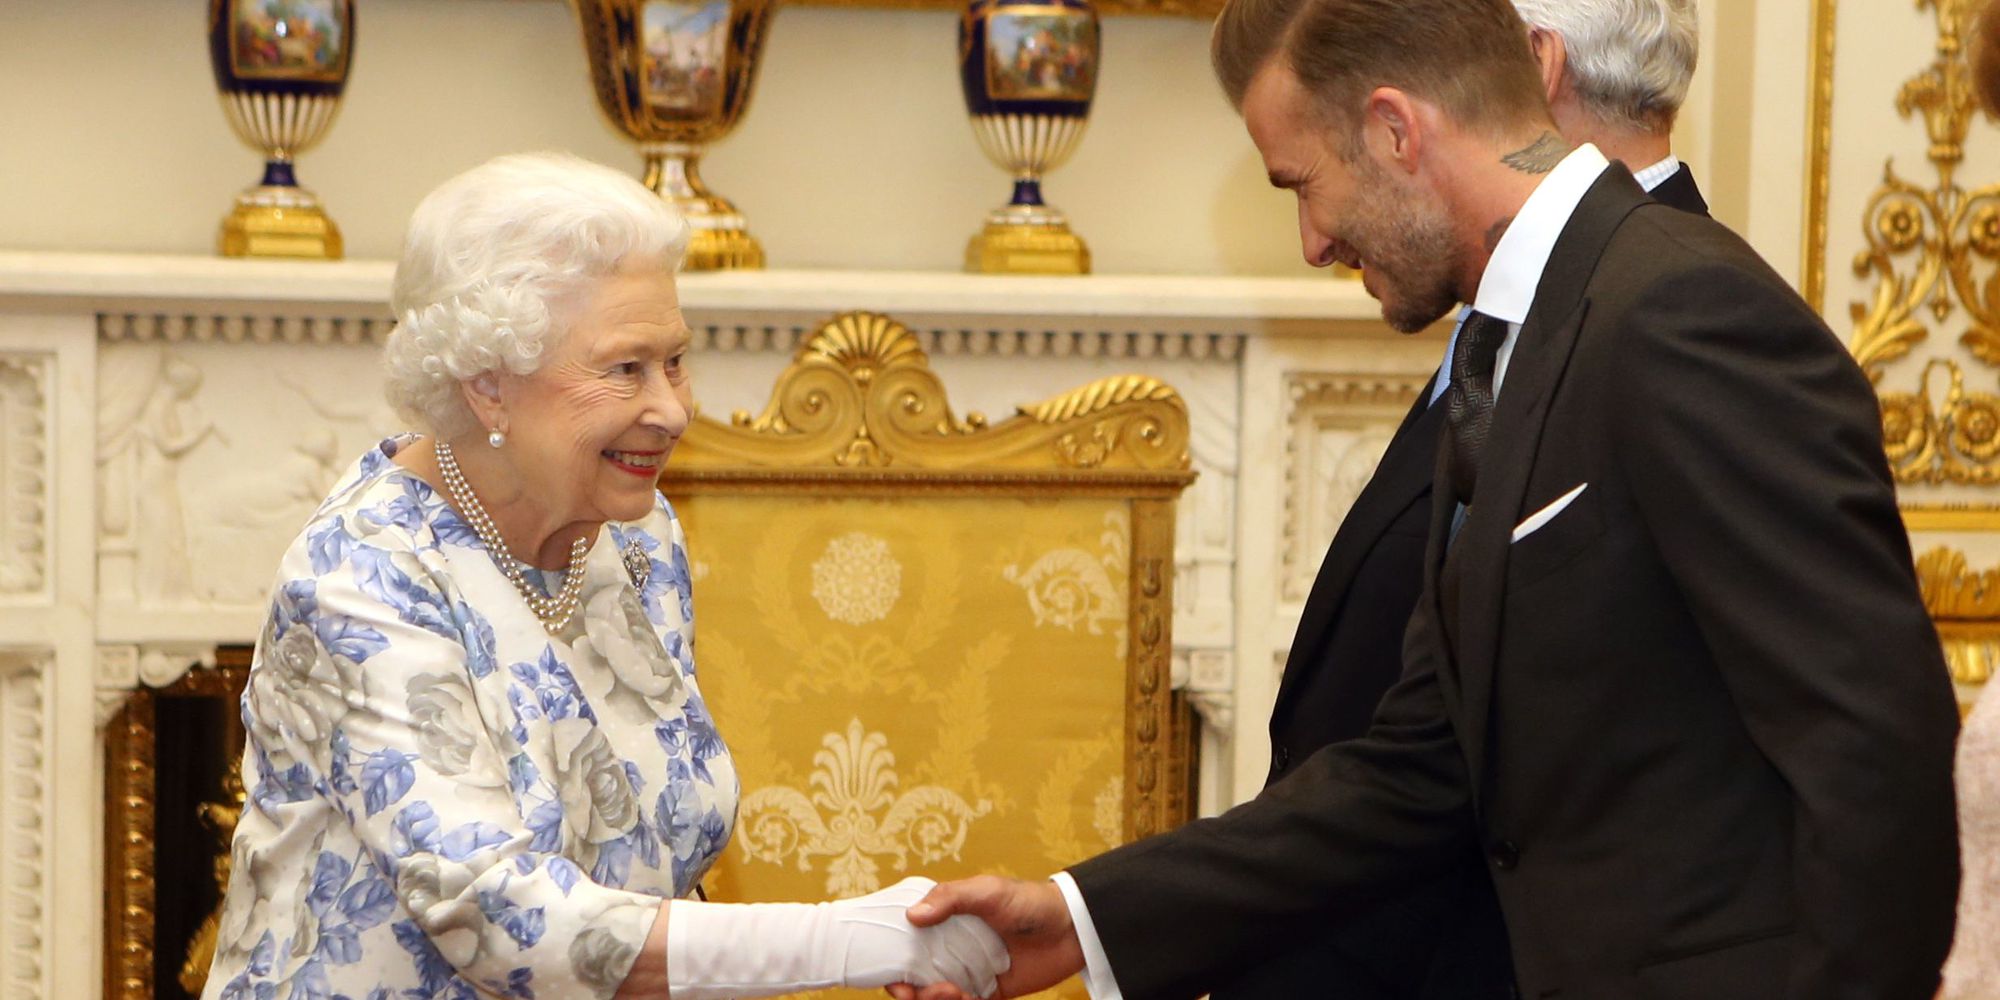 Siêu sao David Beckham xếp hàng đợi 12 tiếng để được viếng Nữ hoàng Anh - Ảnh 4.